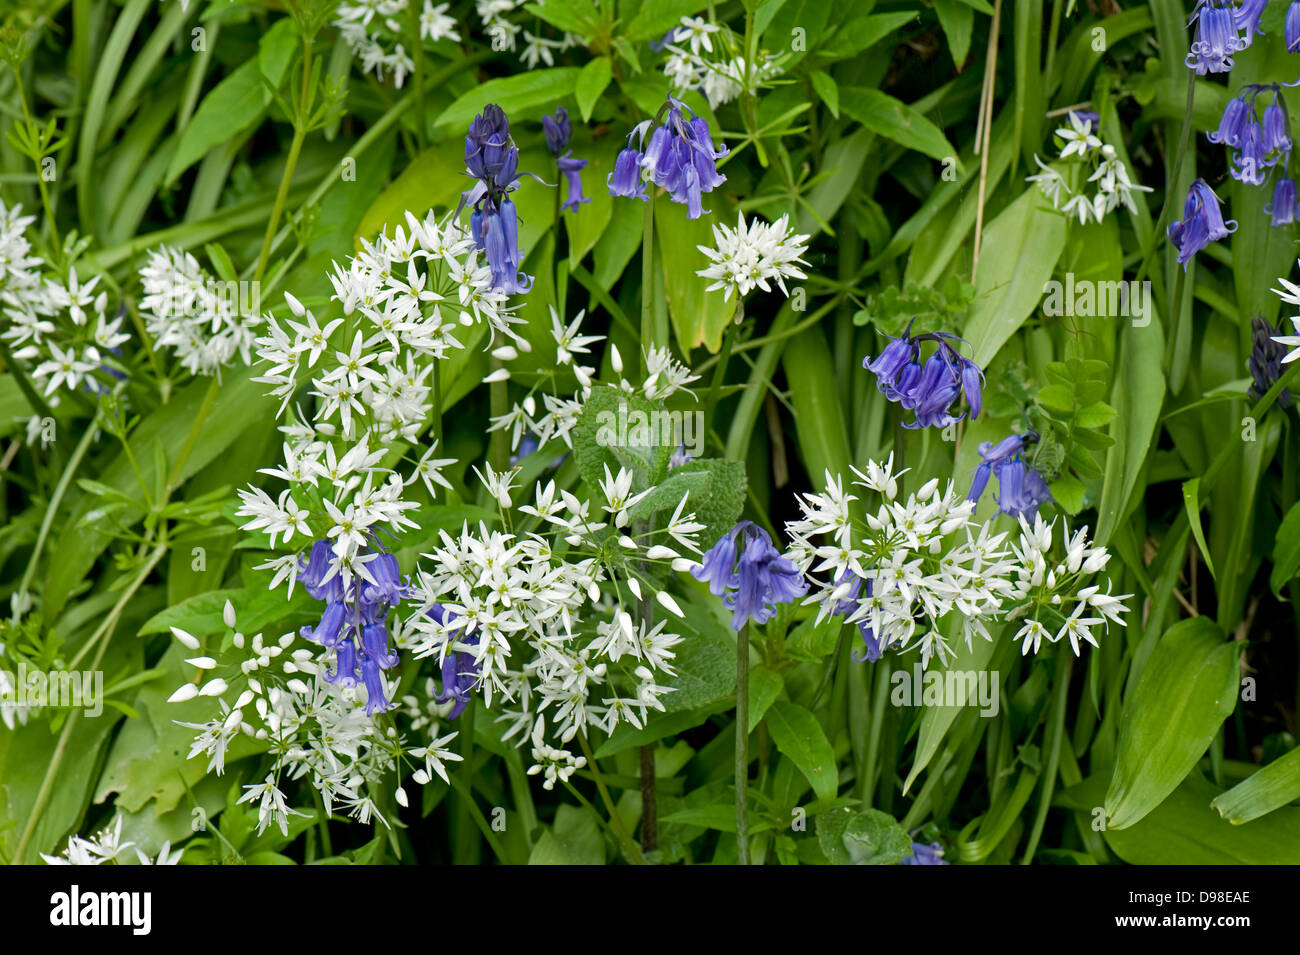 L'ail des ours, Allium ursinum, fleurs blanches bluebells, Hyacinthoides sp., au printemps Banque D'Images